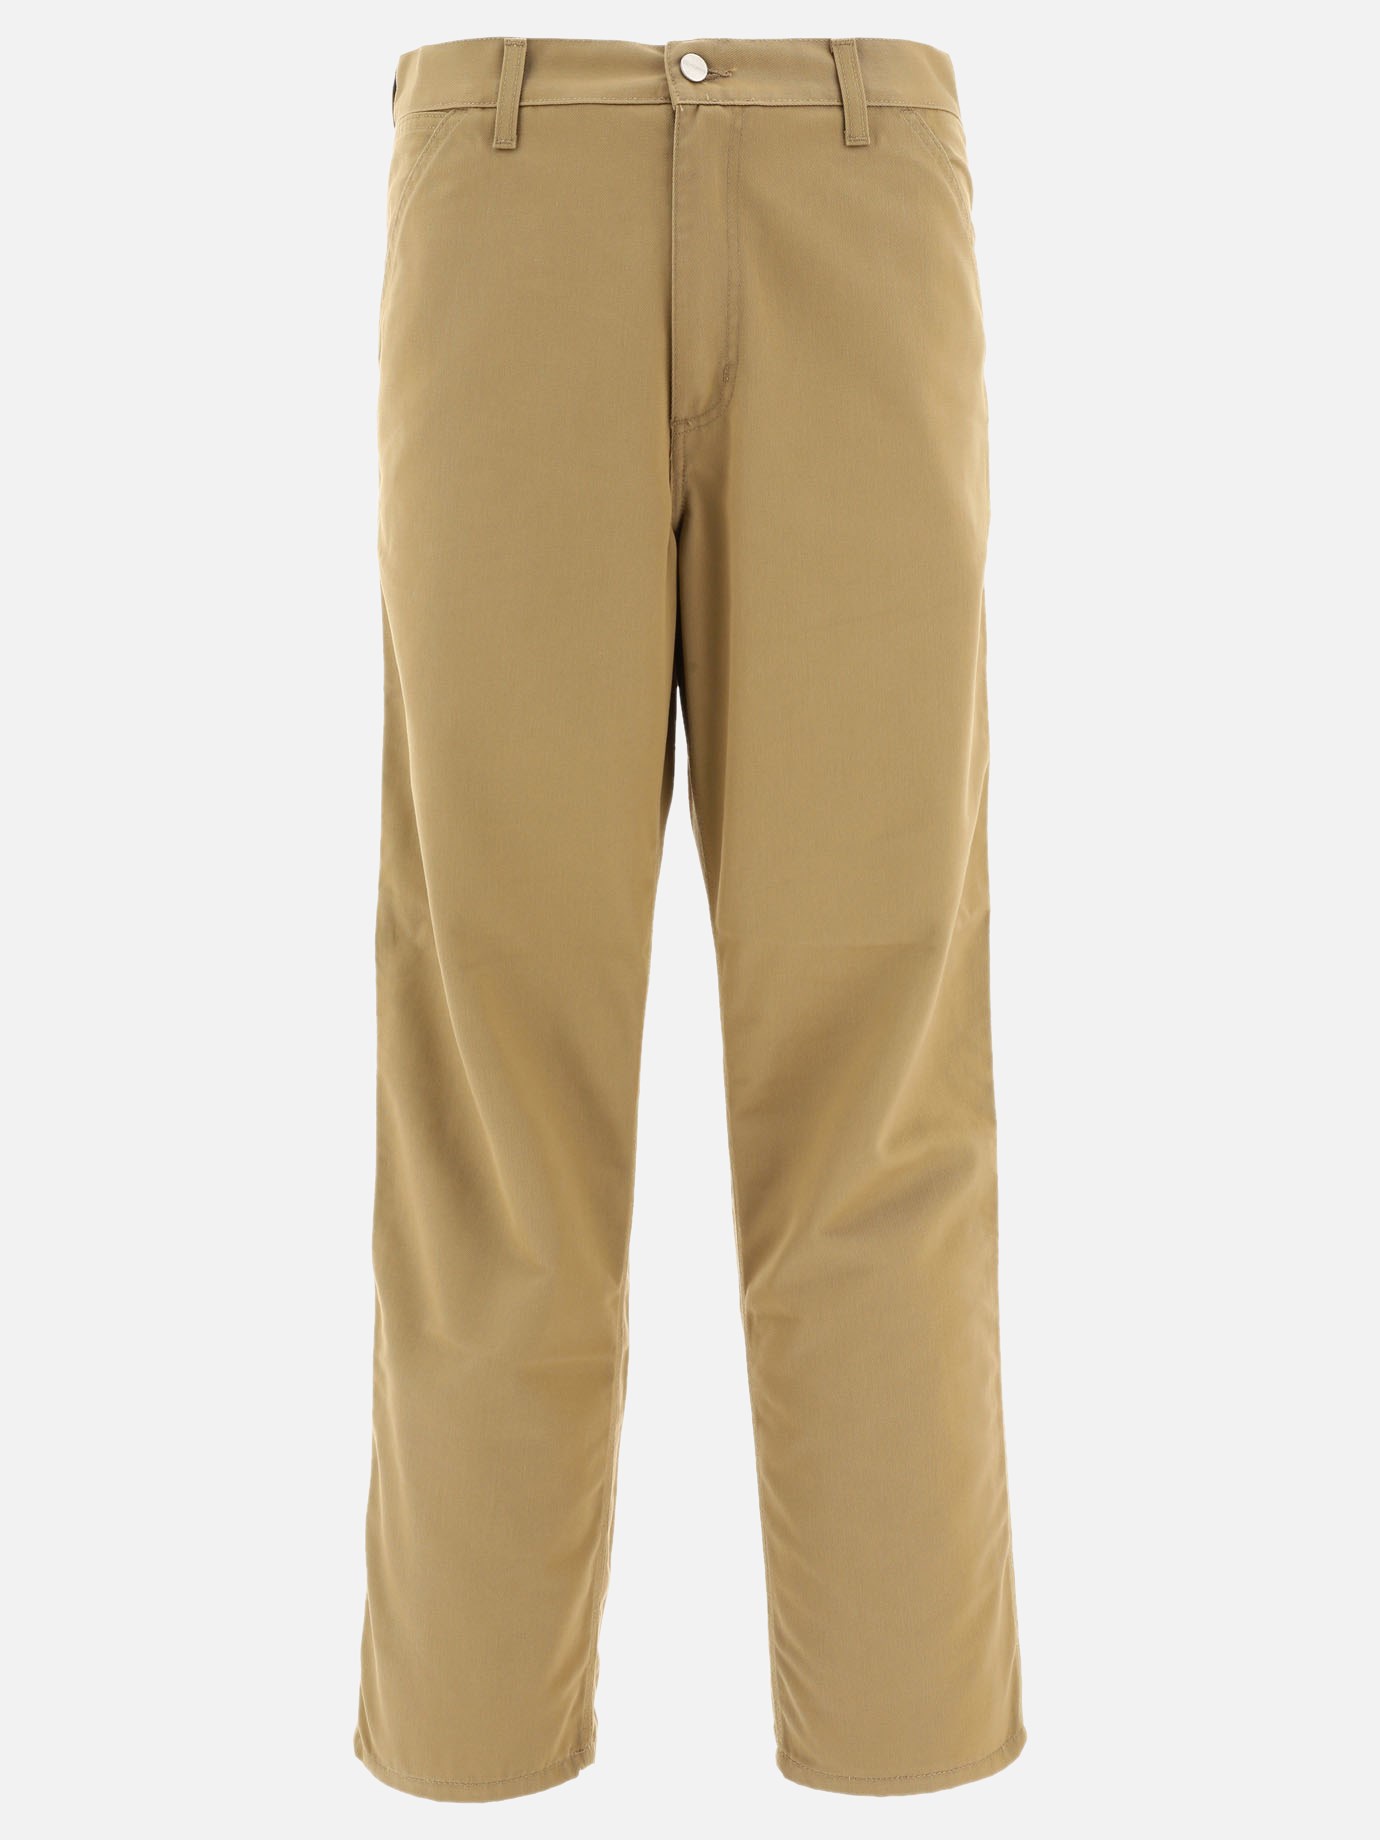 Pantaloni  Simple  by Carhartt WIP